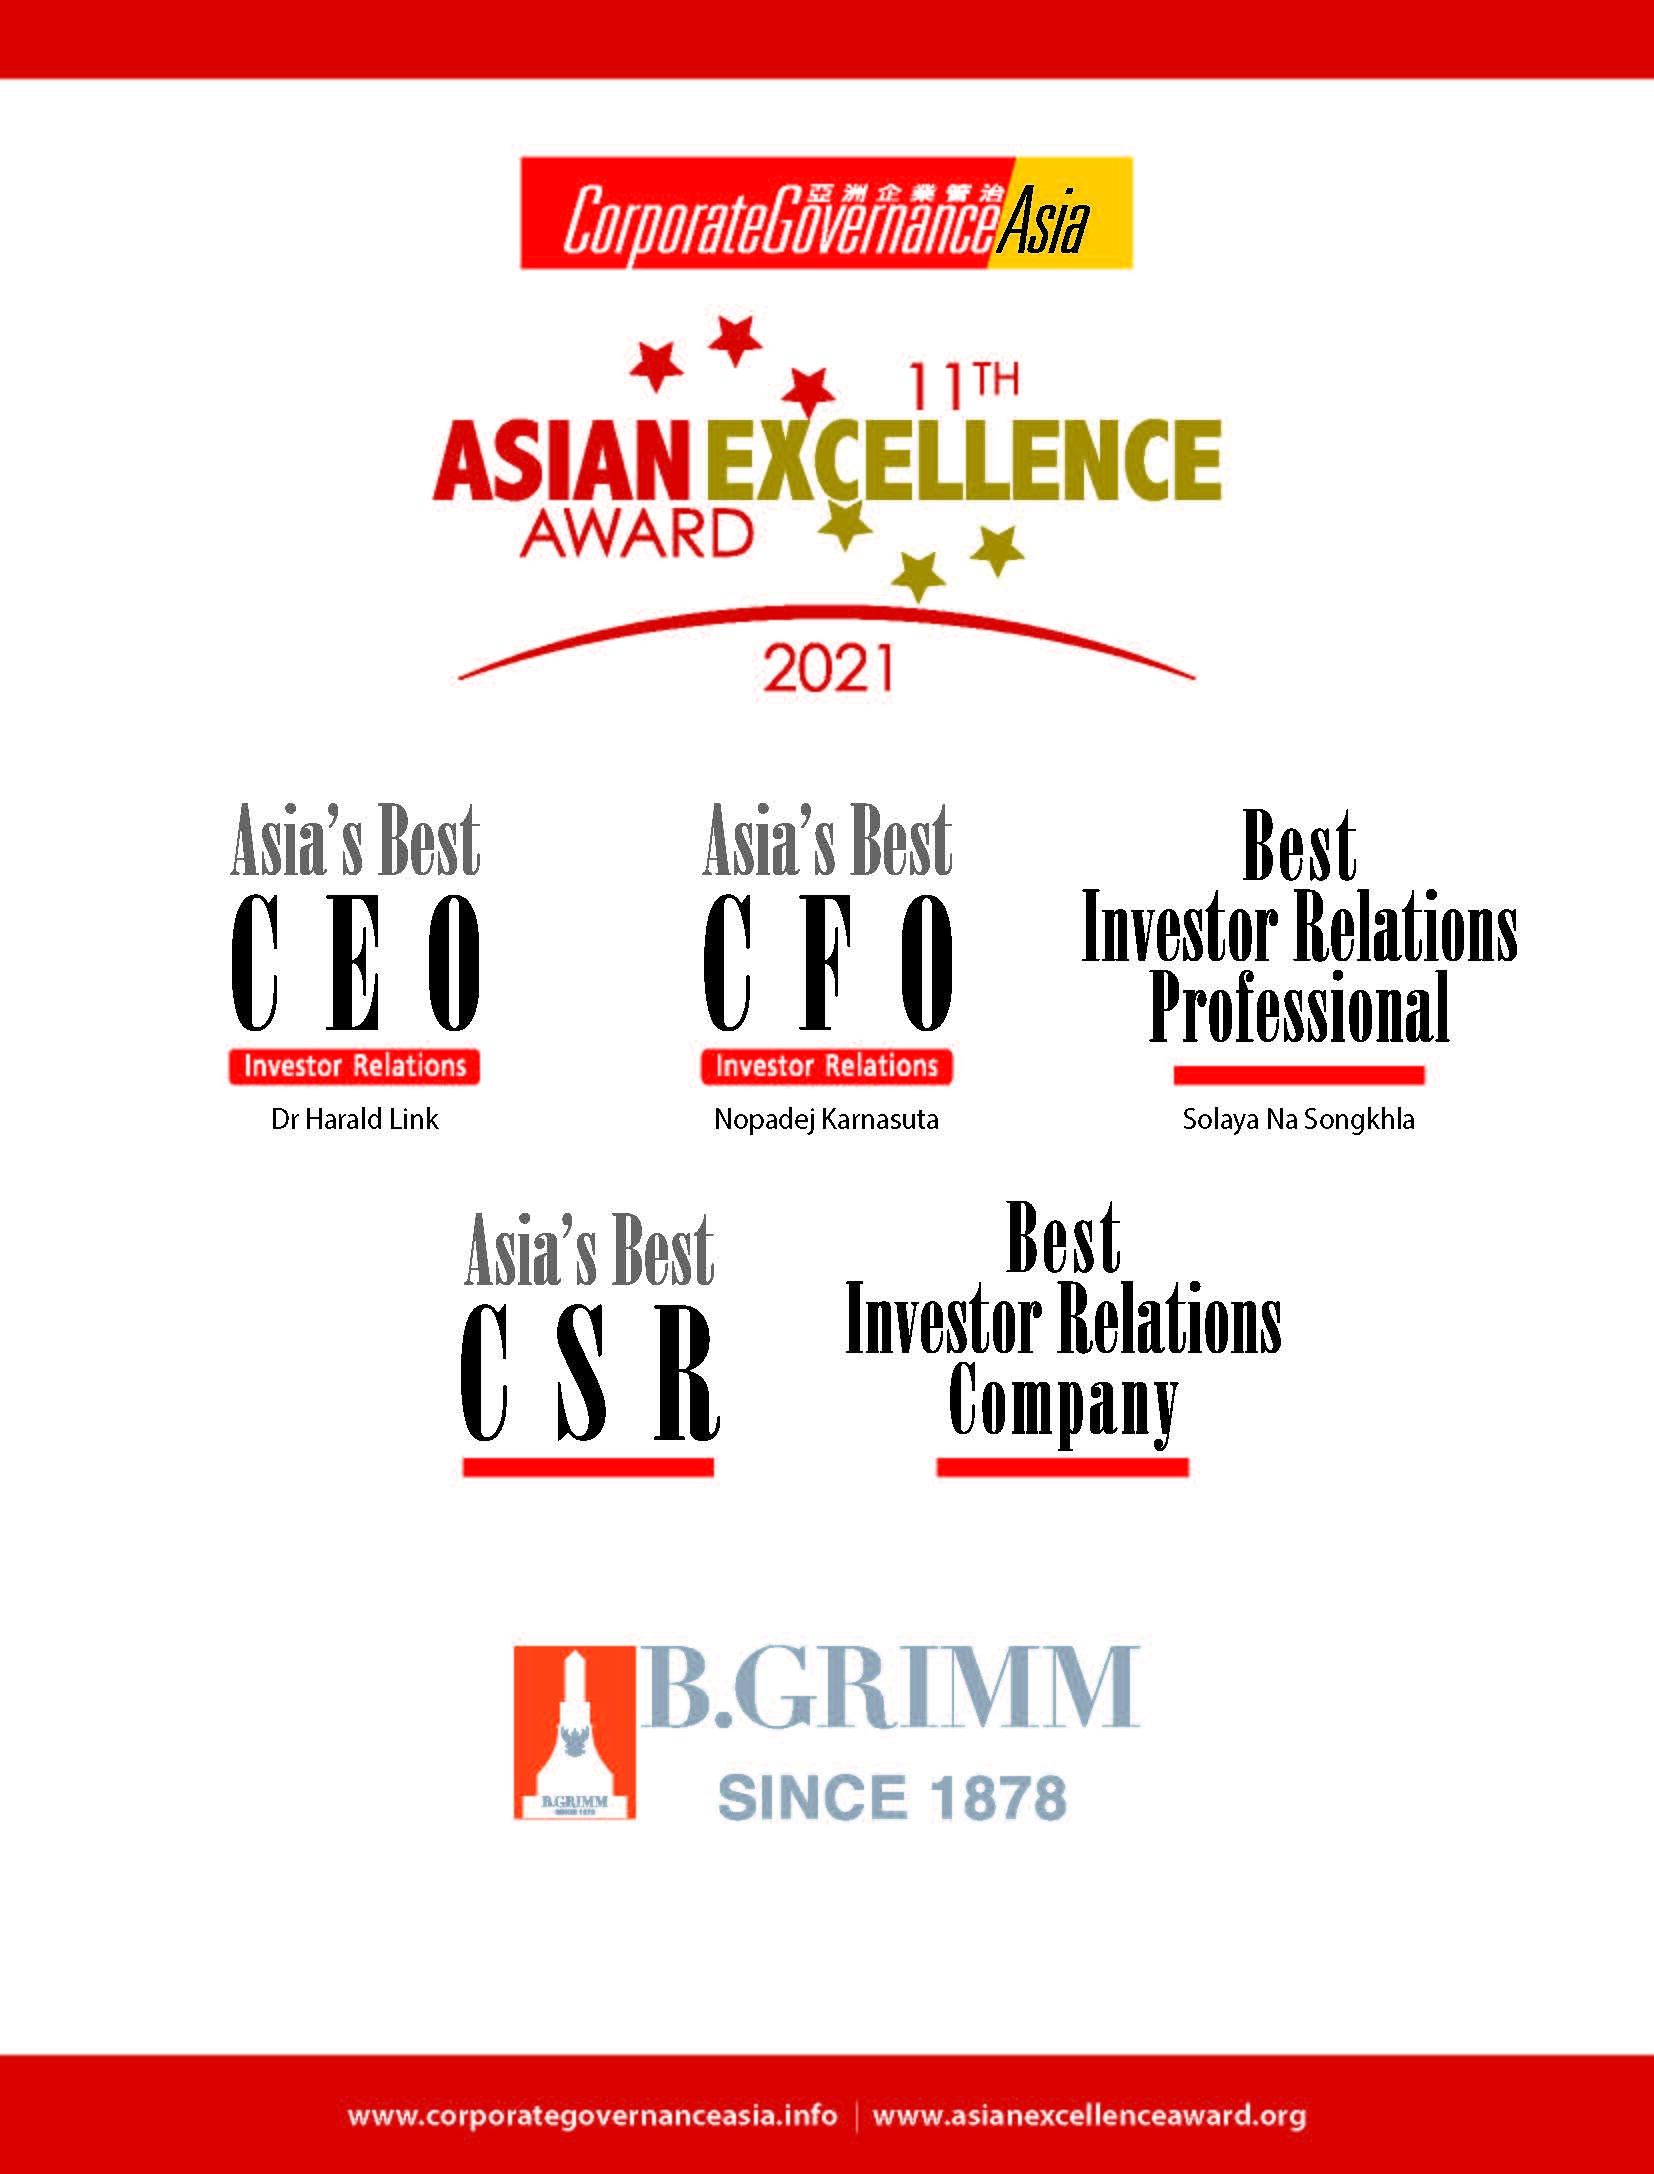 บี.กริม เพาเวอร์ ปลื้มคว้า 5 รางวัลเกียรติยศ Asian Excellence Awards 2021 ตอกย้ำความเป็นเลิศขององค์กร ด้านการลงทุนและธรรมาภิบาล ระดับชั้นนำของเอเชีย